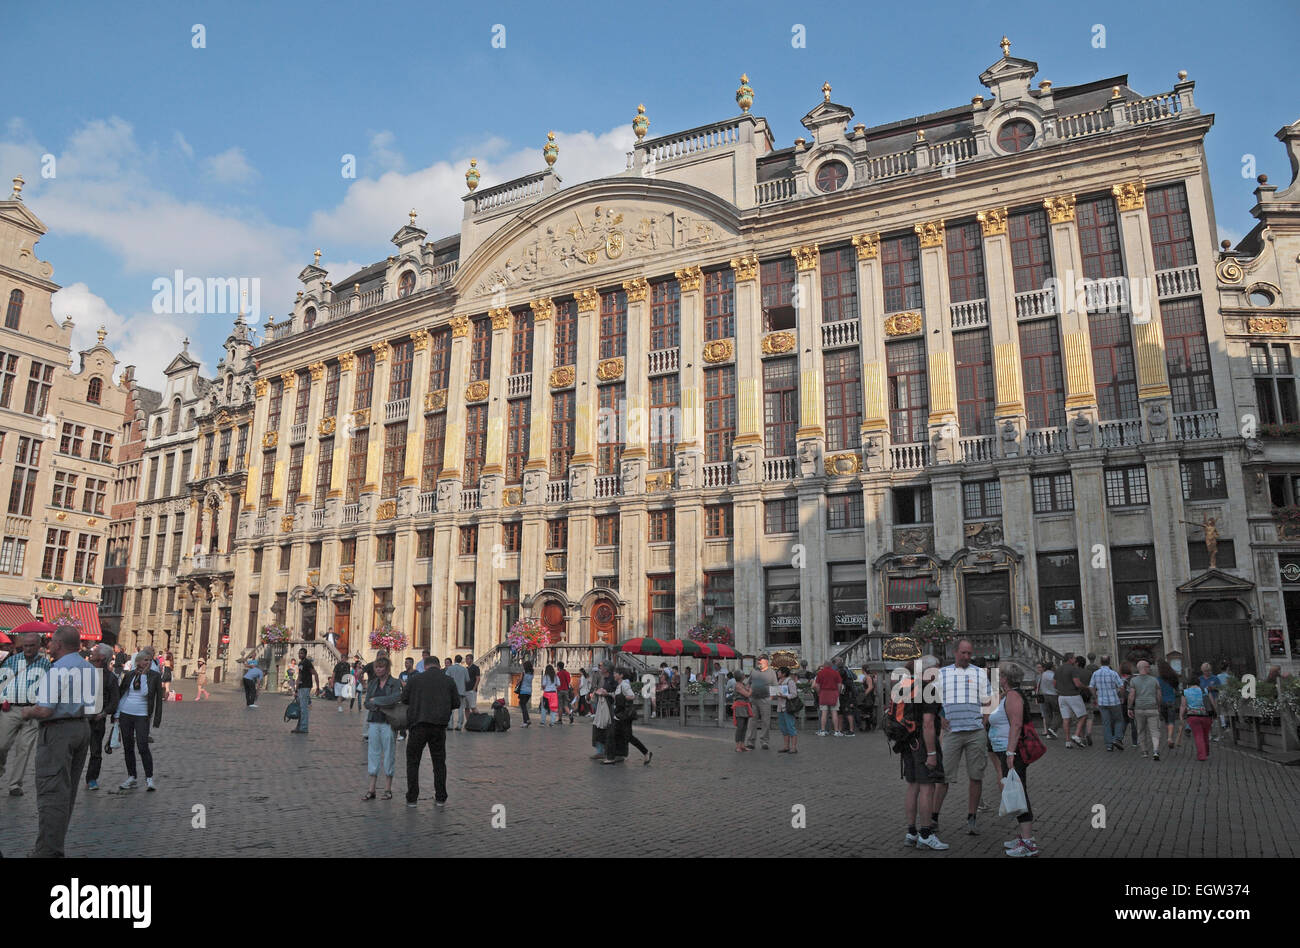 The beautiful La Maison des Ducs de Brabant (House of Dukes of Brabant), Grote Markt (Grand Place), Brussels, Belgium Stock Photo